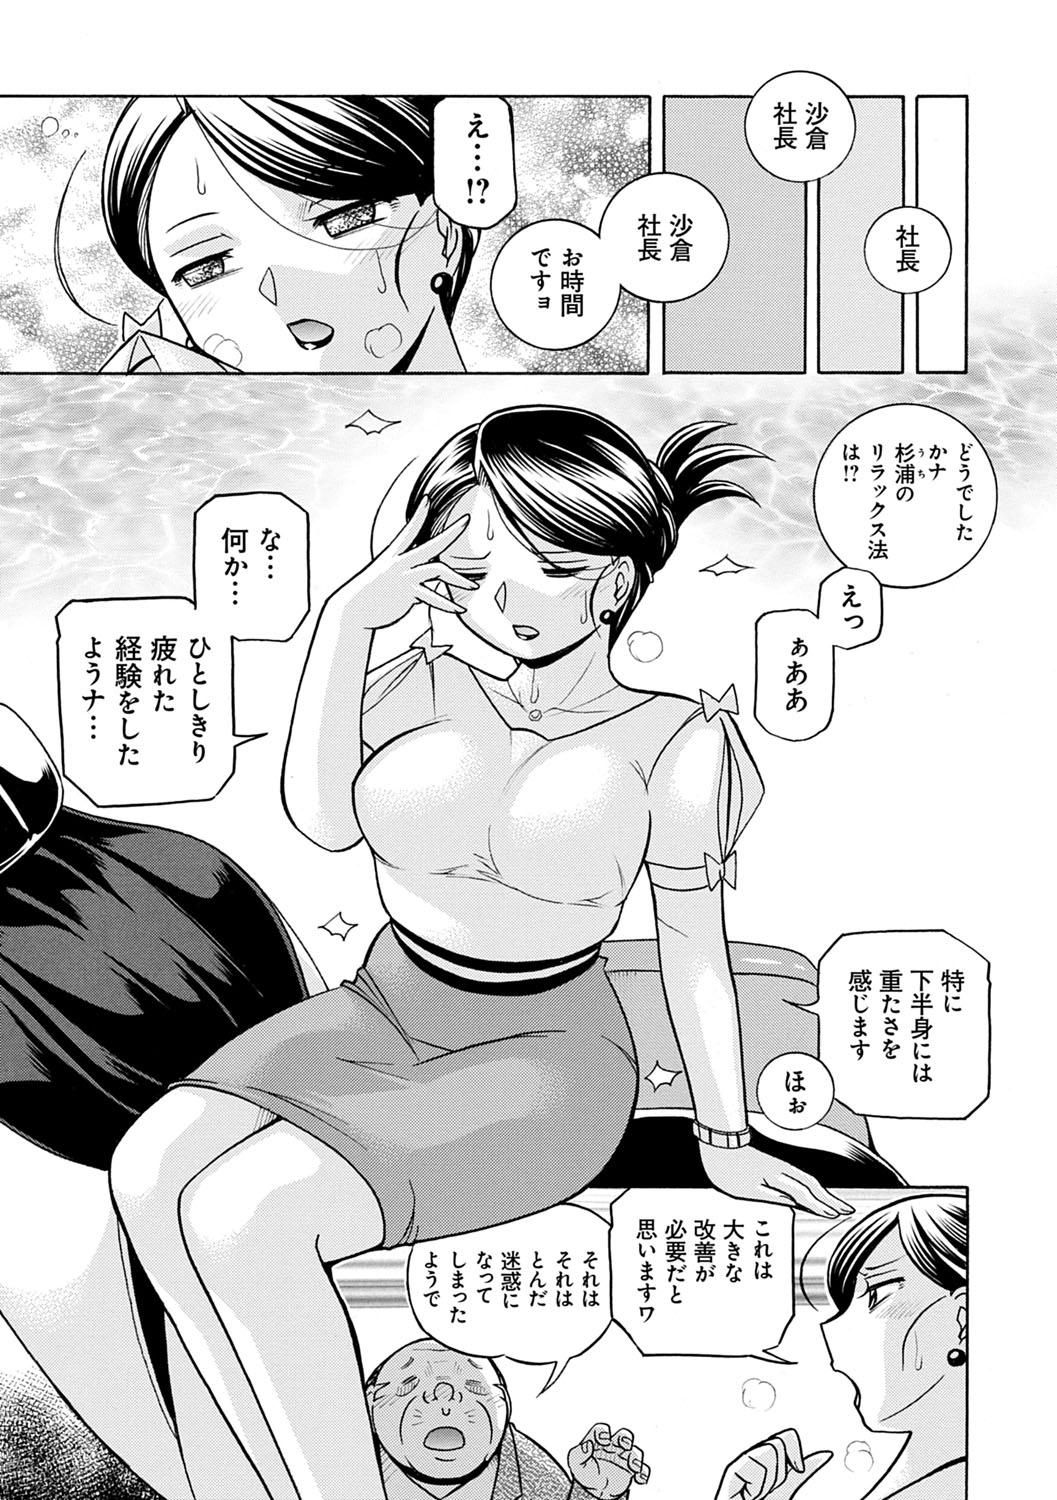 [Chuuka Naruto] Bijin Shachou Yuki ~Mitsuyaku no Nikusettai~ - YUKI of The Beautiful Chief Executive Officer ~The secret sweet treaty by sexual reception~ [Digital] 23